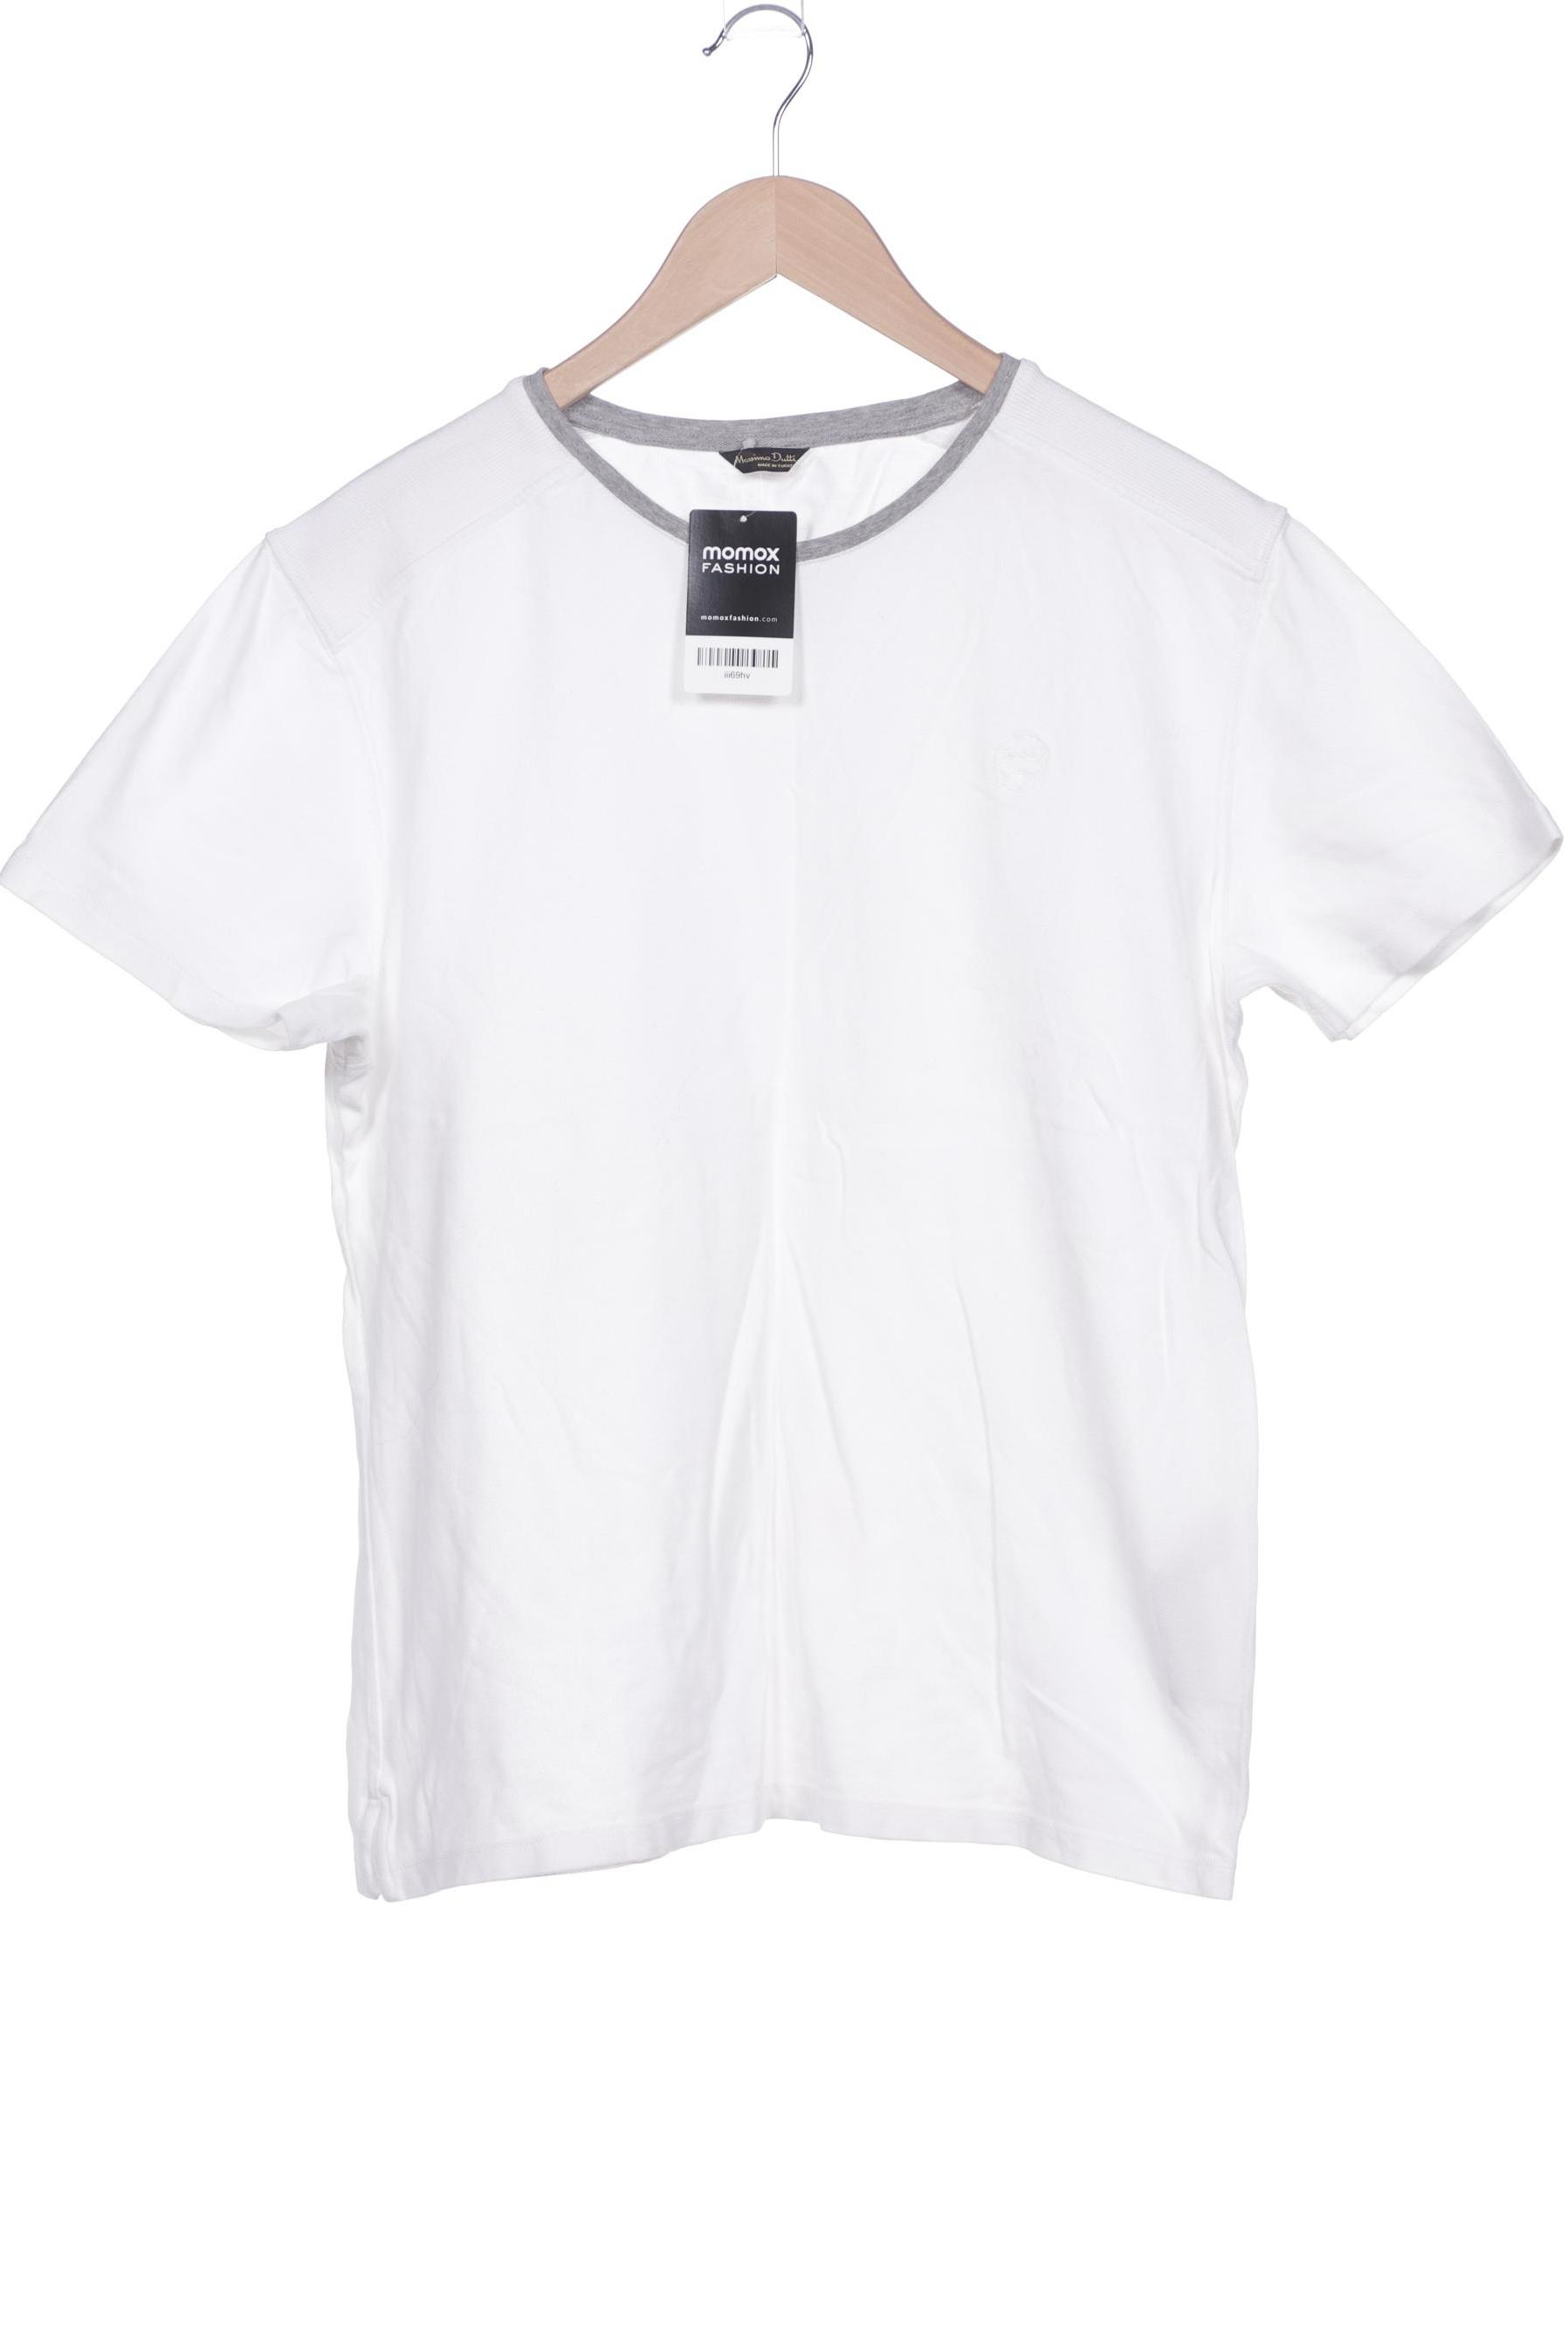 Massimo Dutti Herren T-Shirt, weiß, Gr. 56 von Massimo Dutti